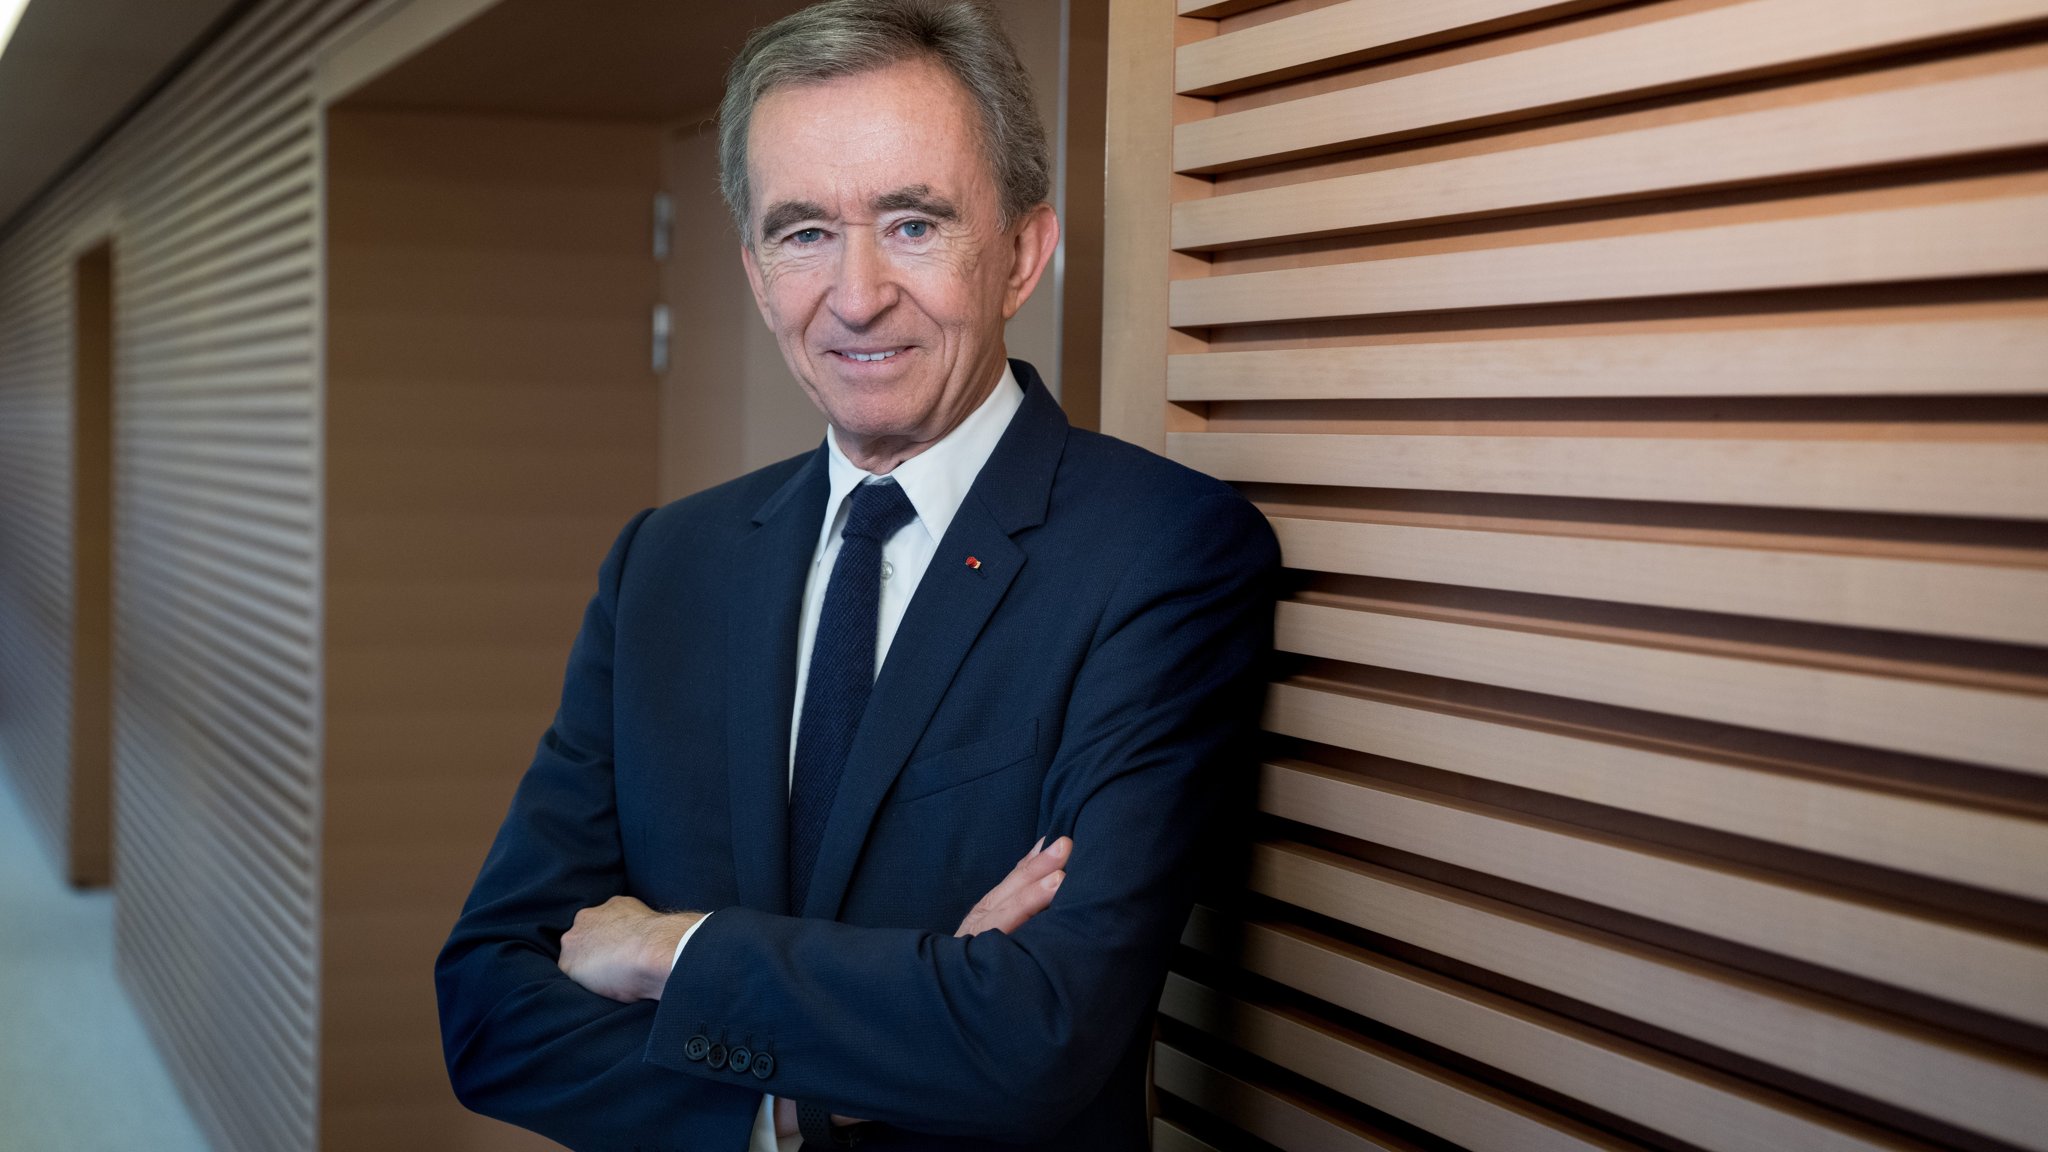 Groupe Arnault приобрели долю в одной из крупнейших медиакомпаний во Франции 